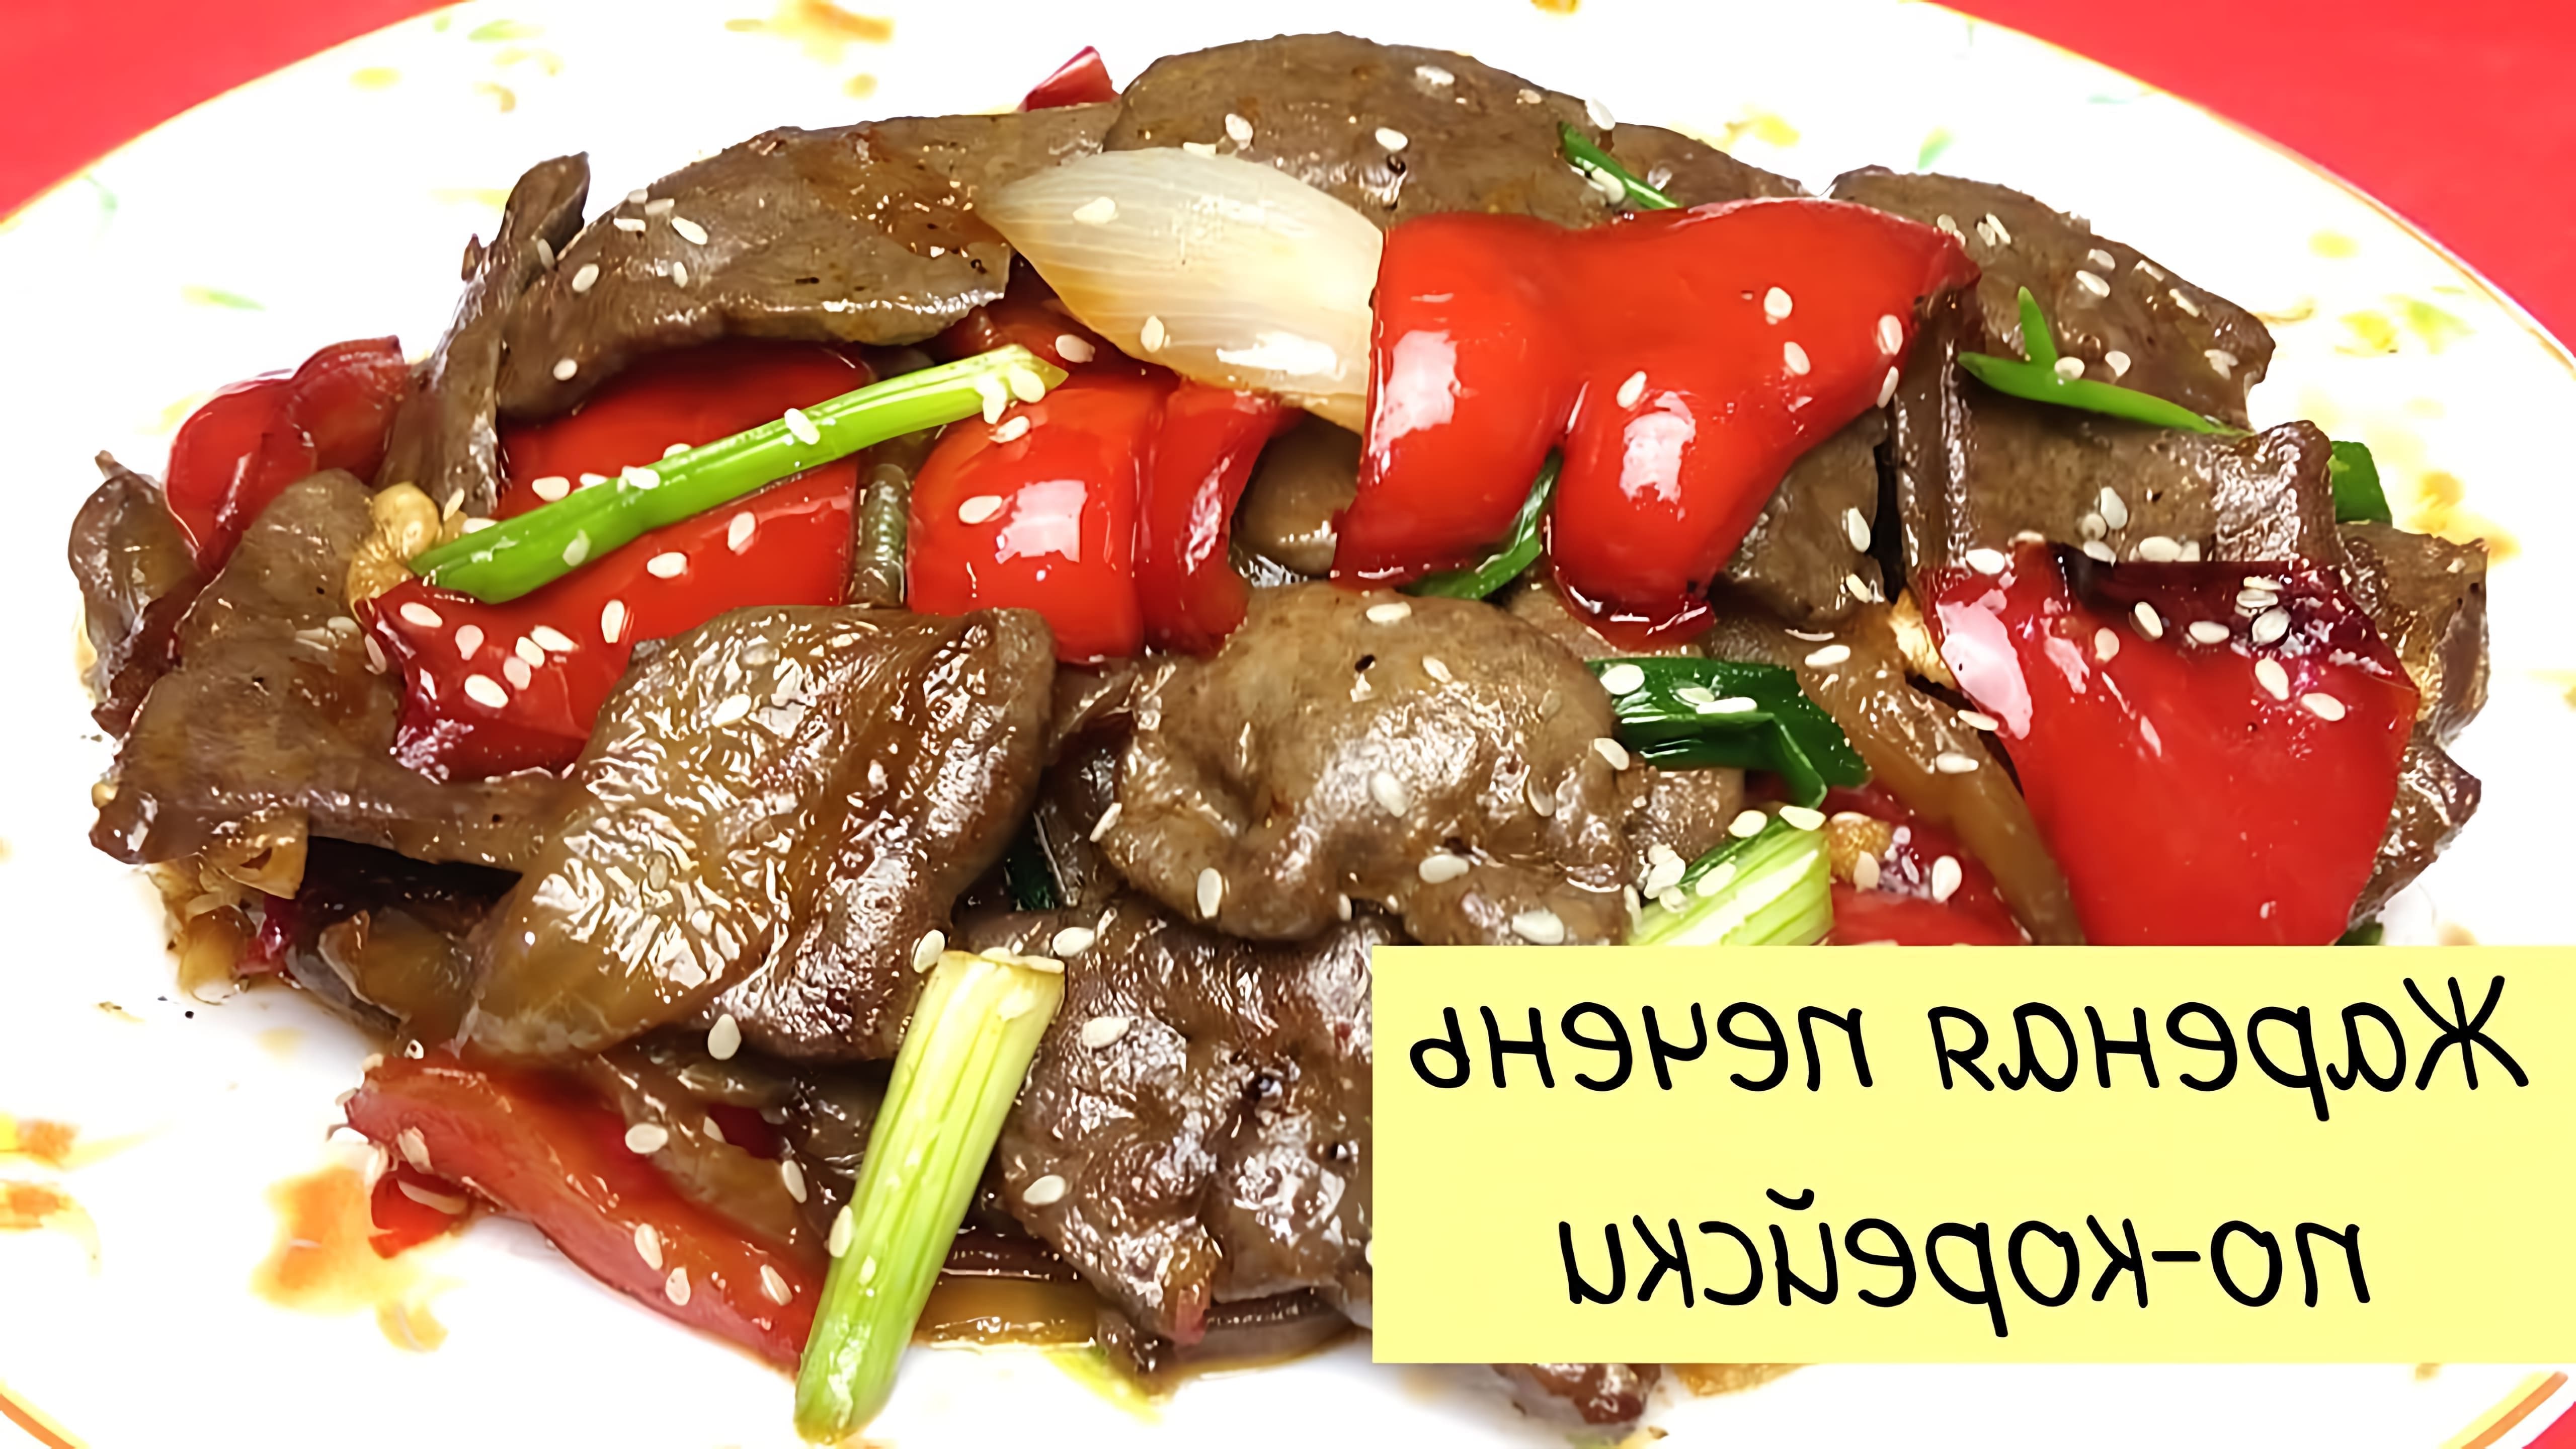 В данном видео демонстрируется процесс приготовления жареной говяжьей печени с овощами по-корейски